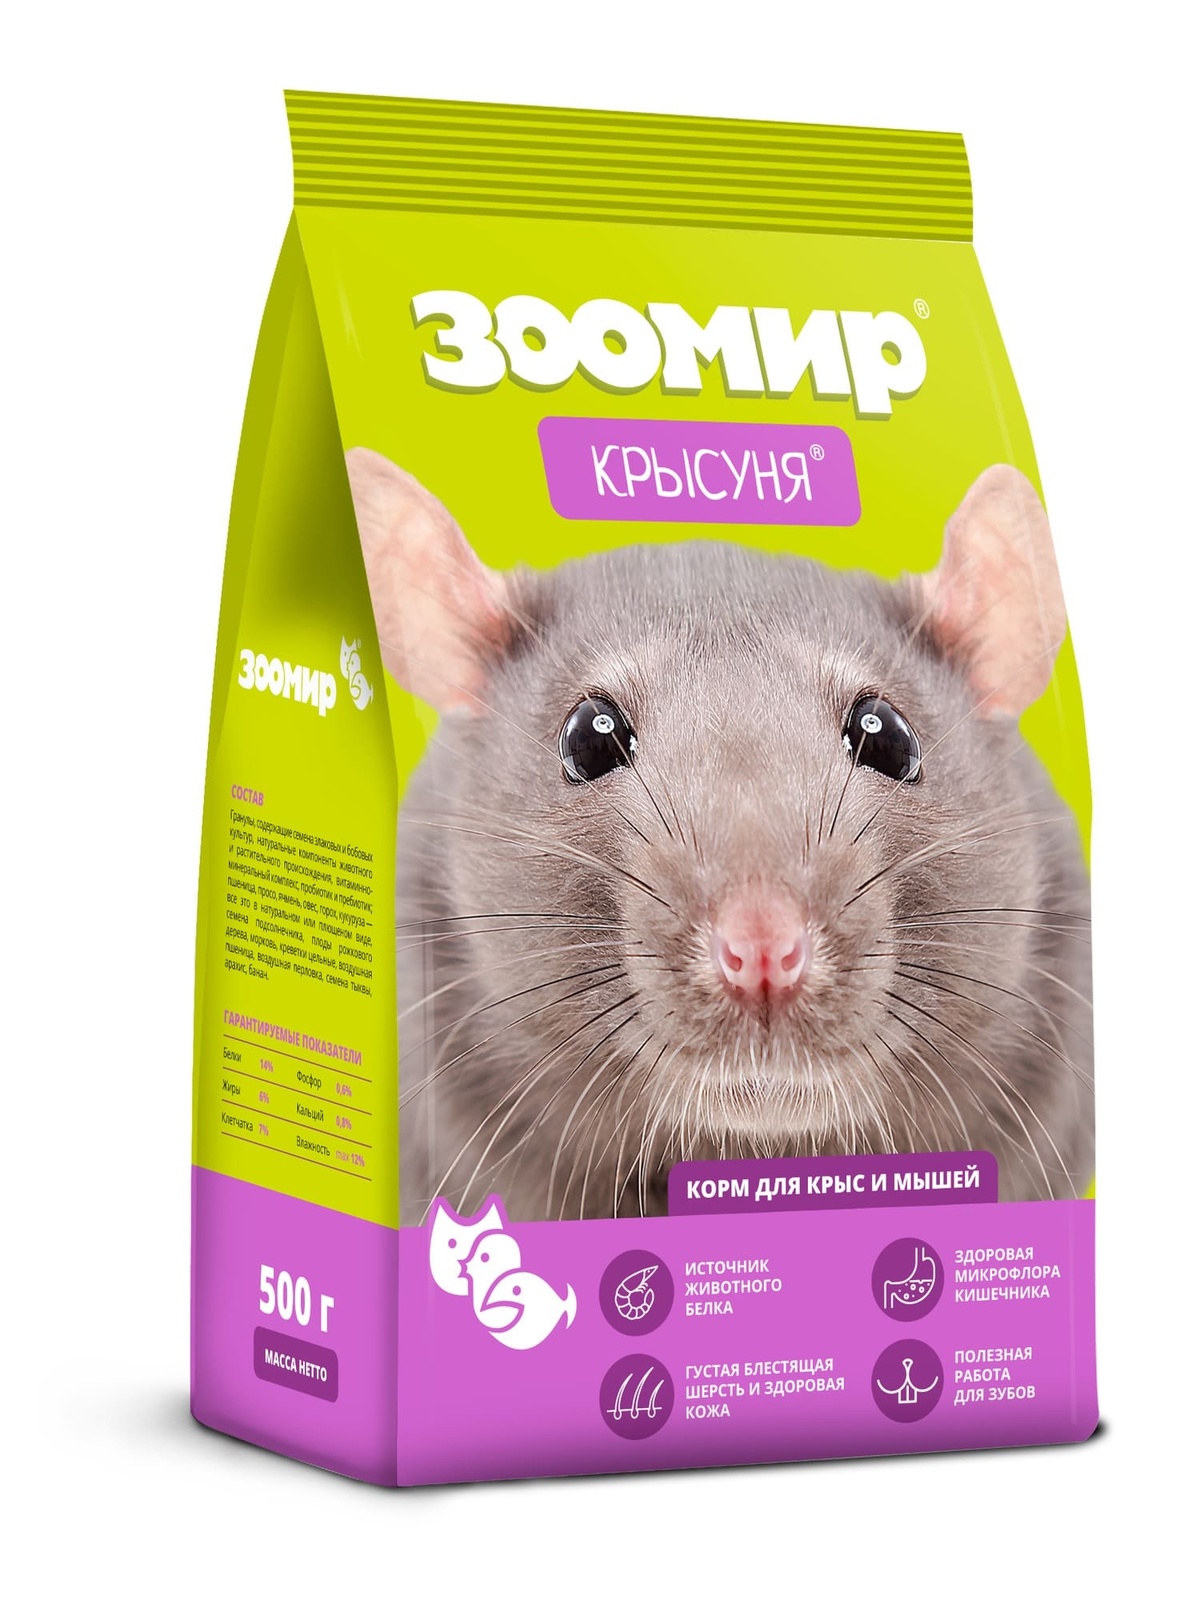 ЗООМИР ЗООМИР корм для крыс и мышей Крысуня (500 г) корм для крыс и мышей зоомир крысуня 800 г